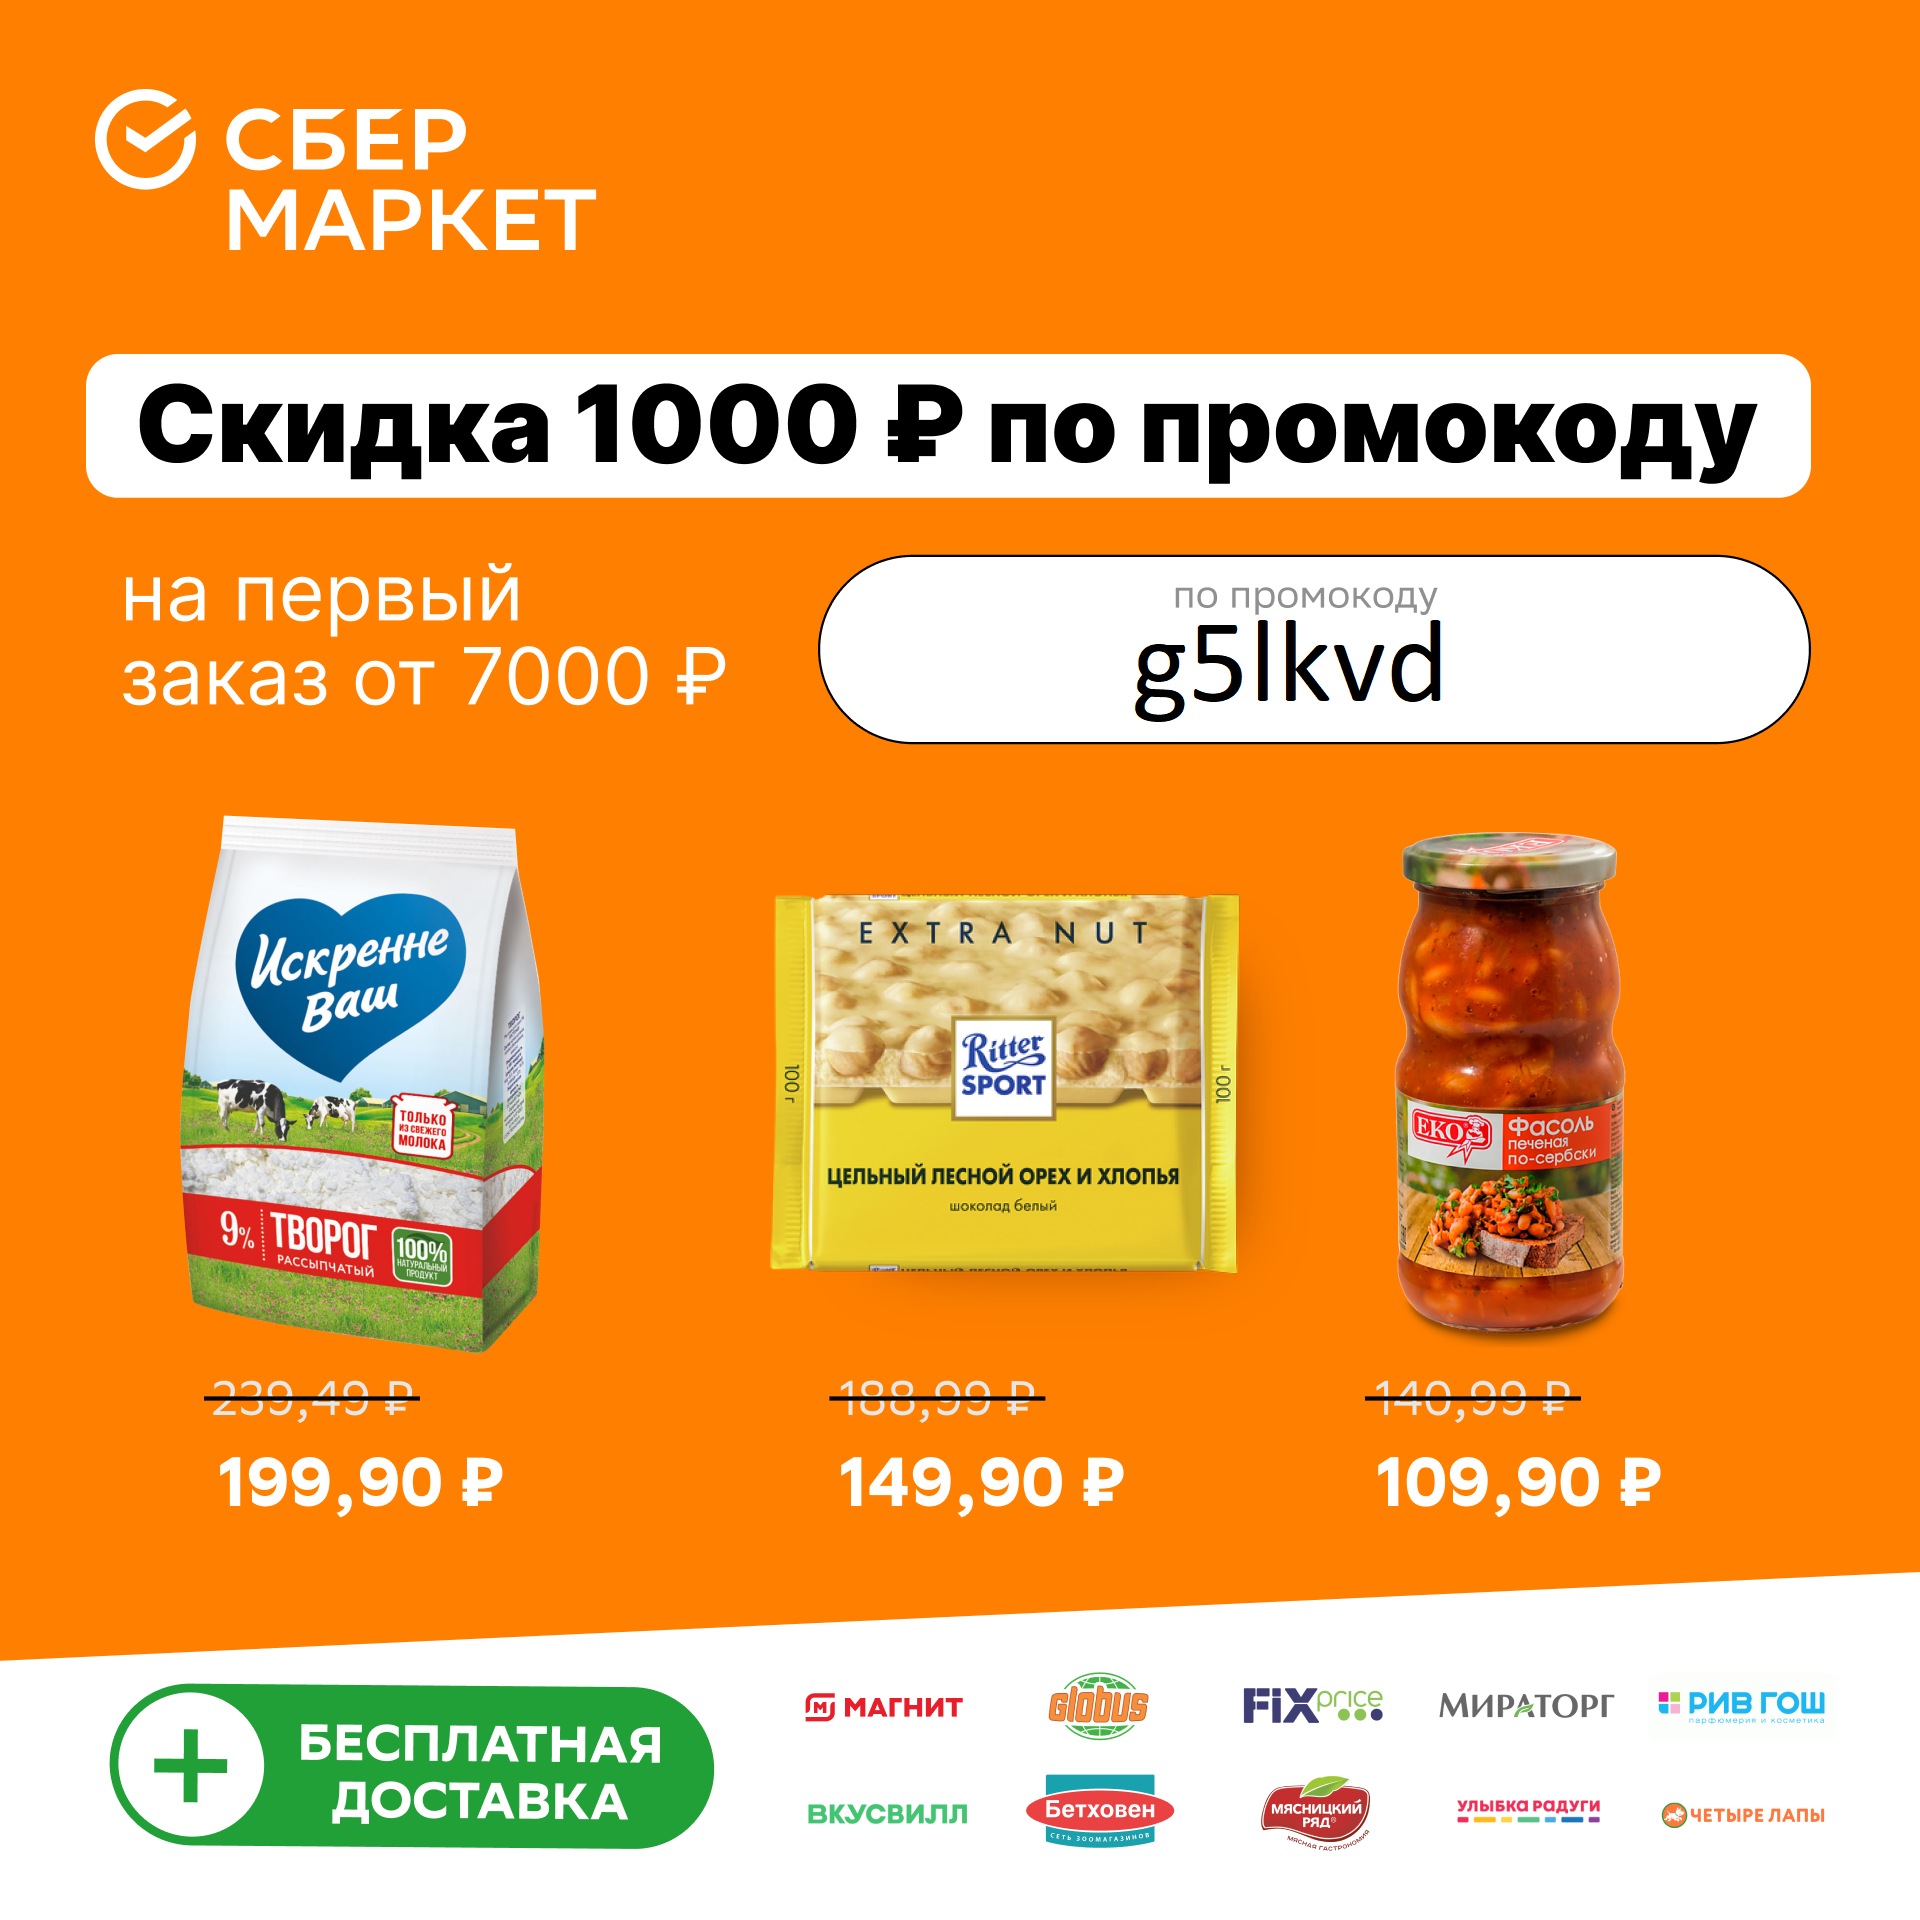 Сбермаркет скидка 1000 рублей на первый